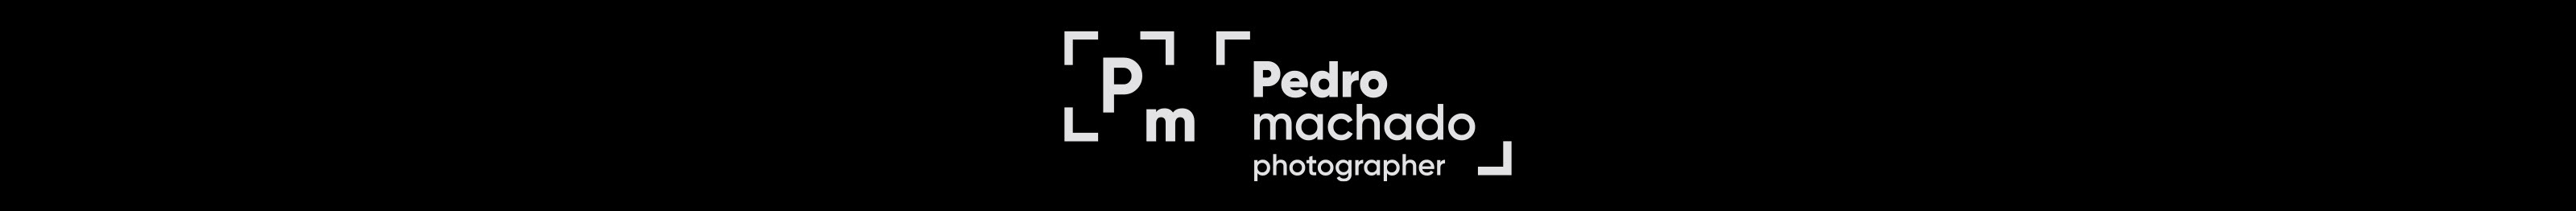 Pedro Machado's profile banner